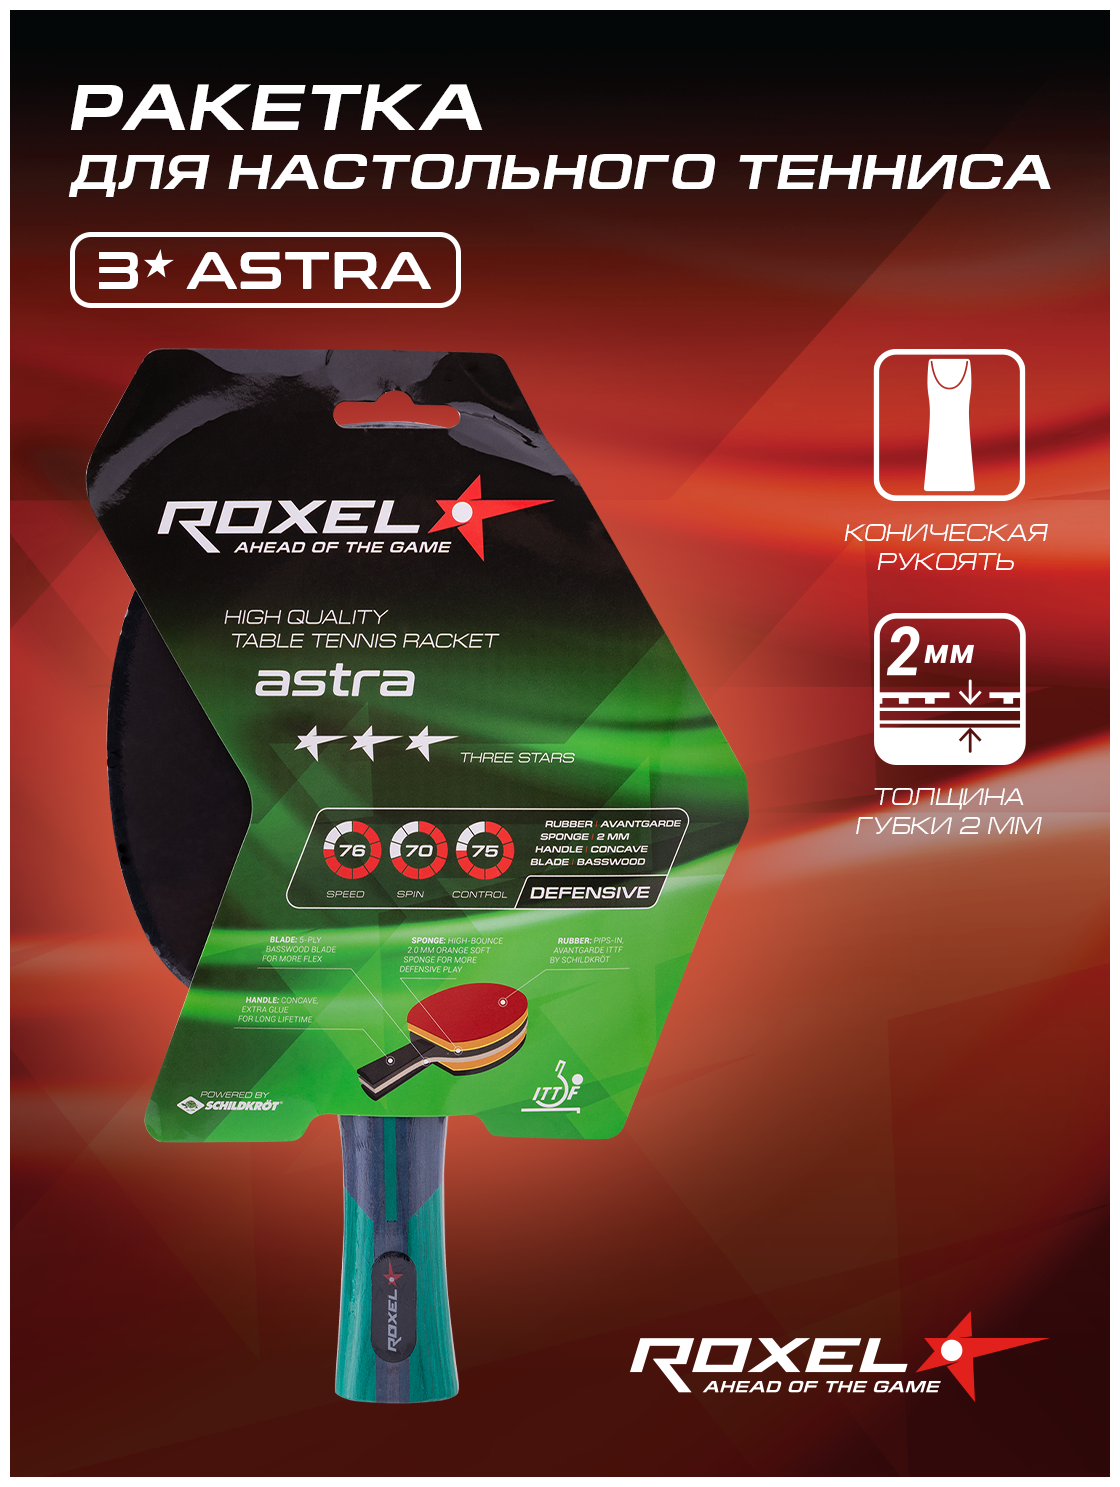 Ракетка н/т Roxel 3* Astra, коническая